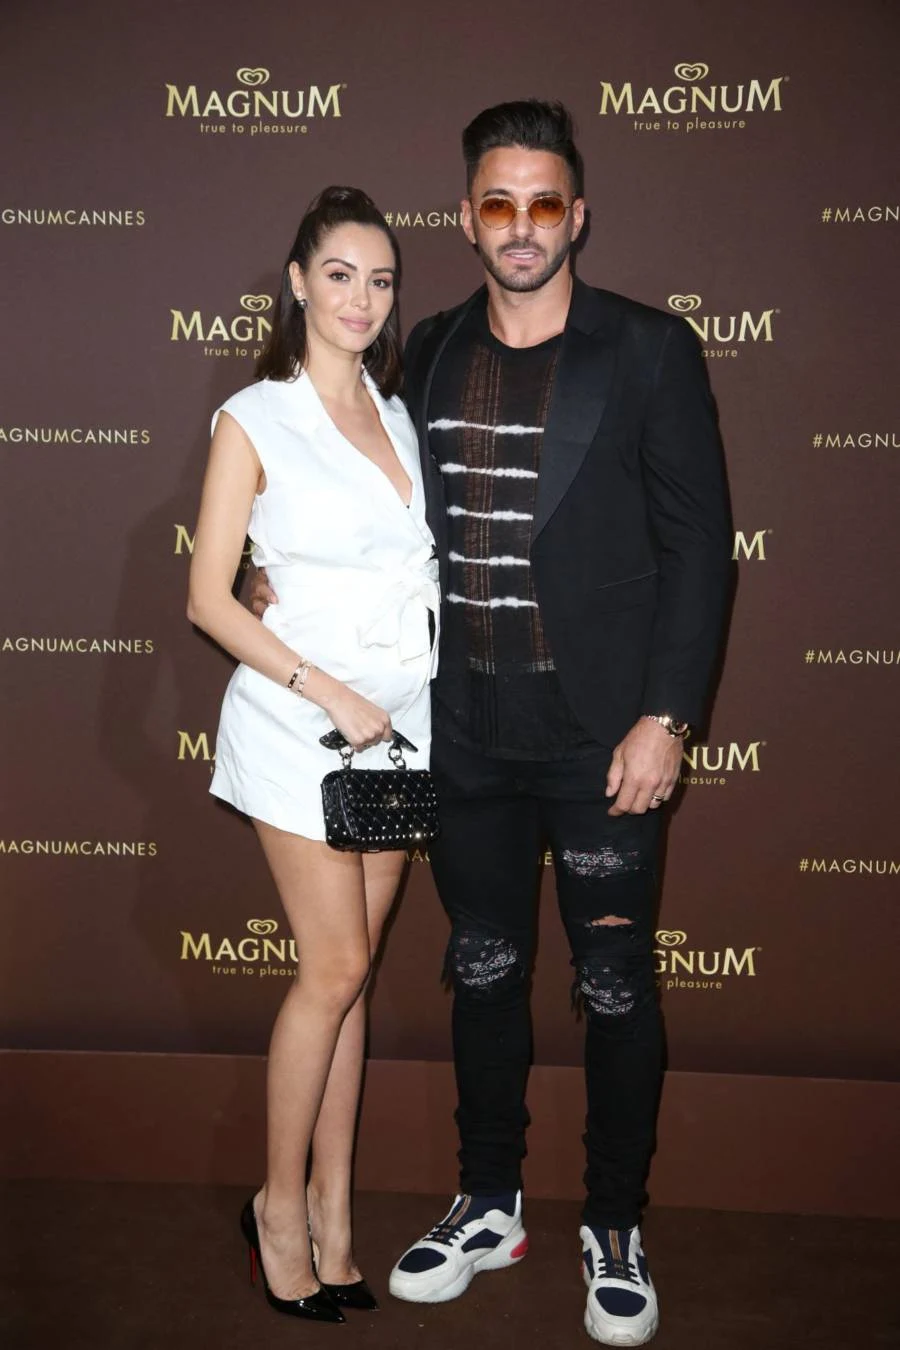 Nabilla Benattia At Magnum Party Cannes Film Festival 2019